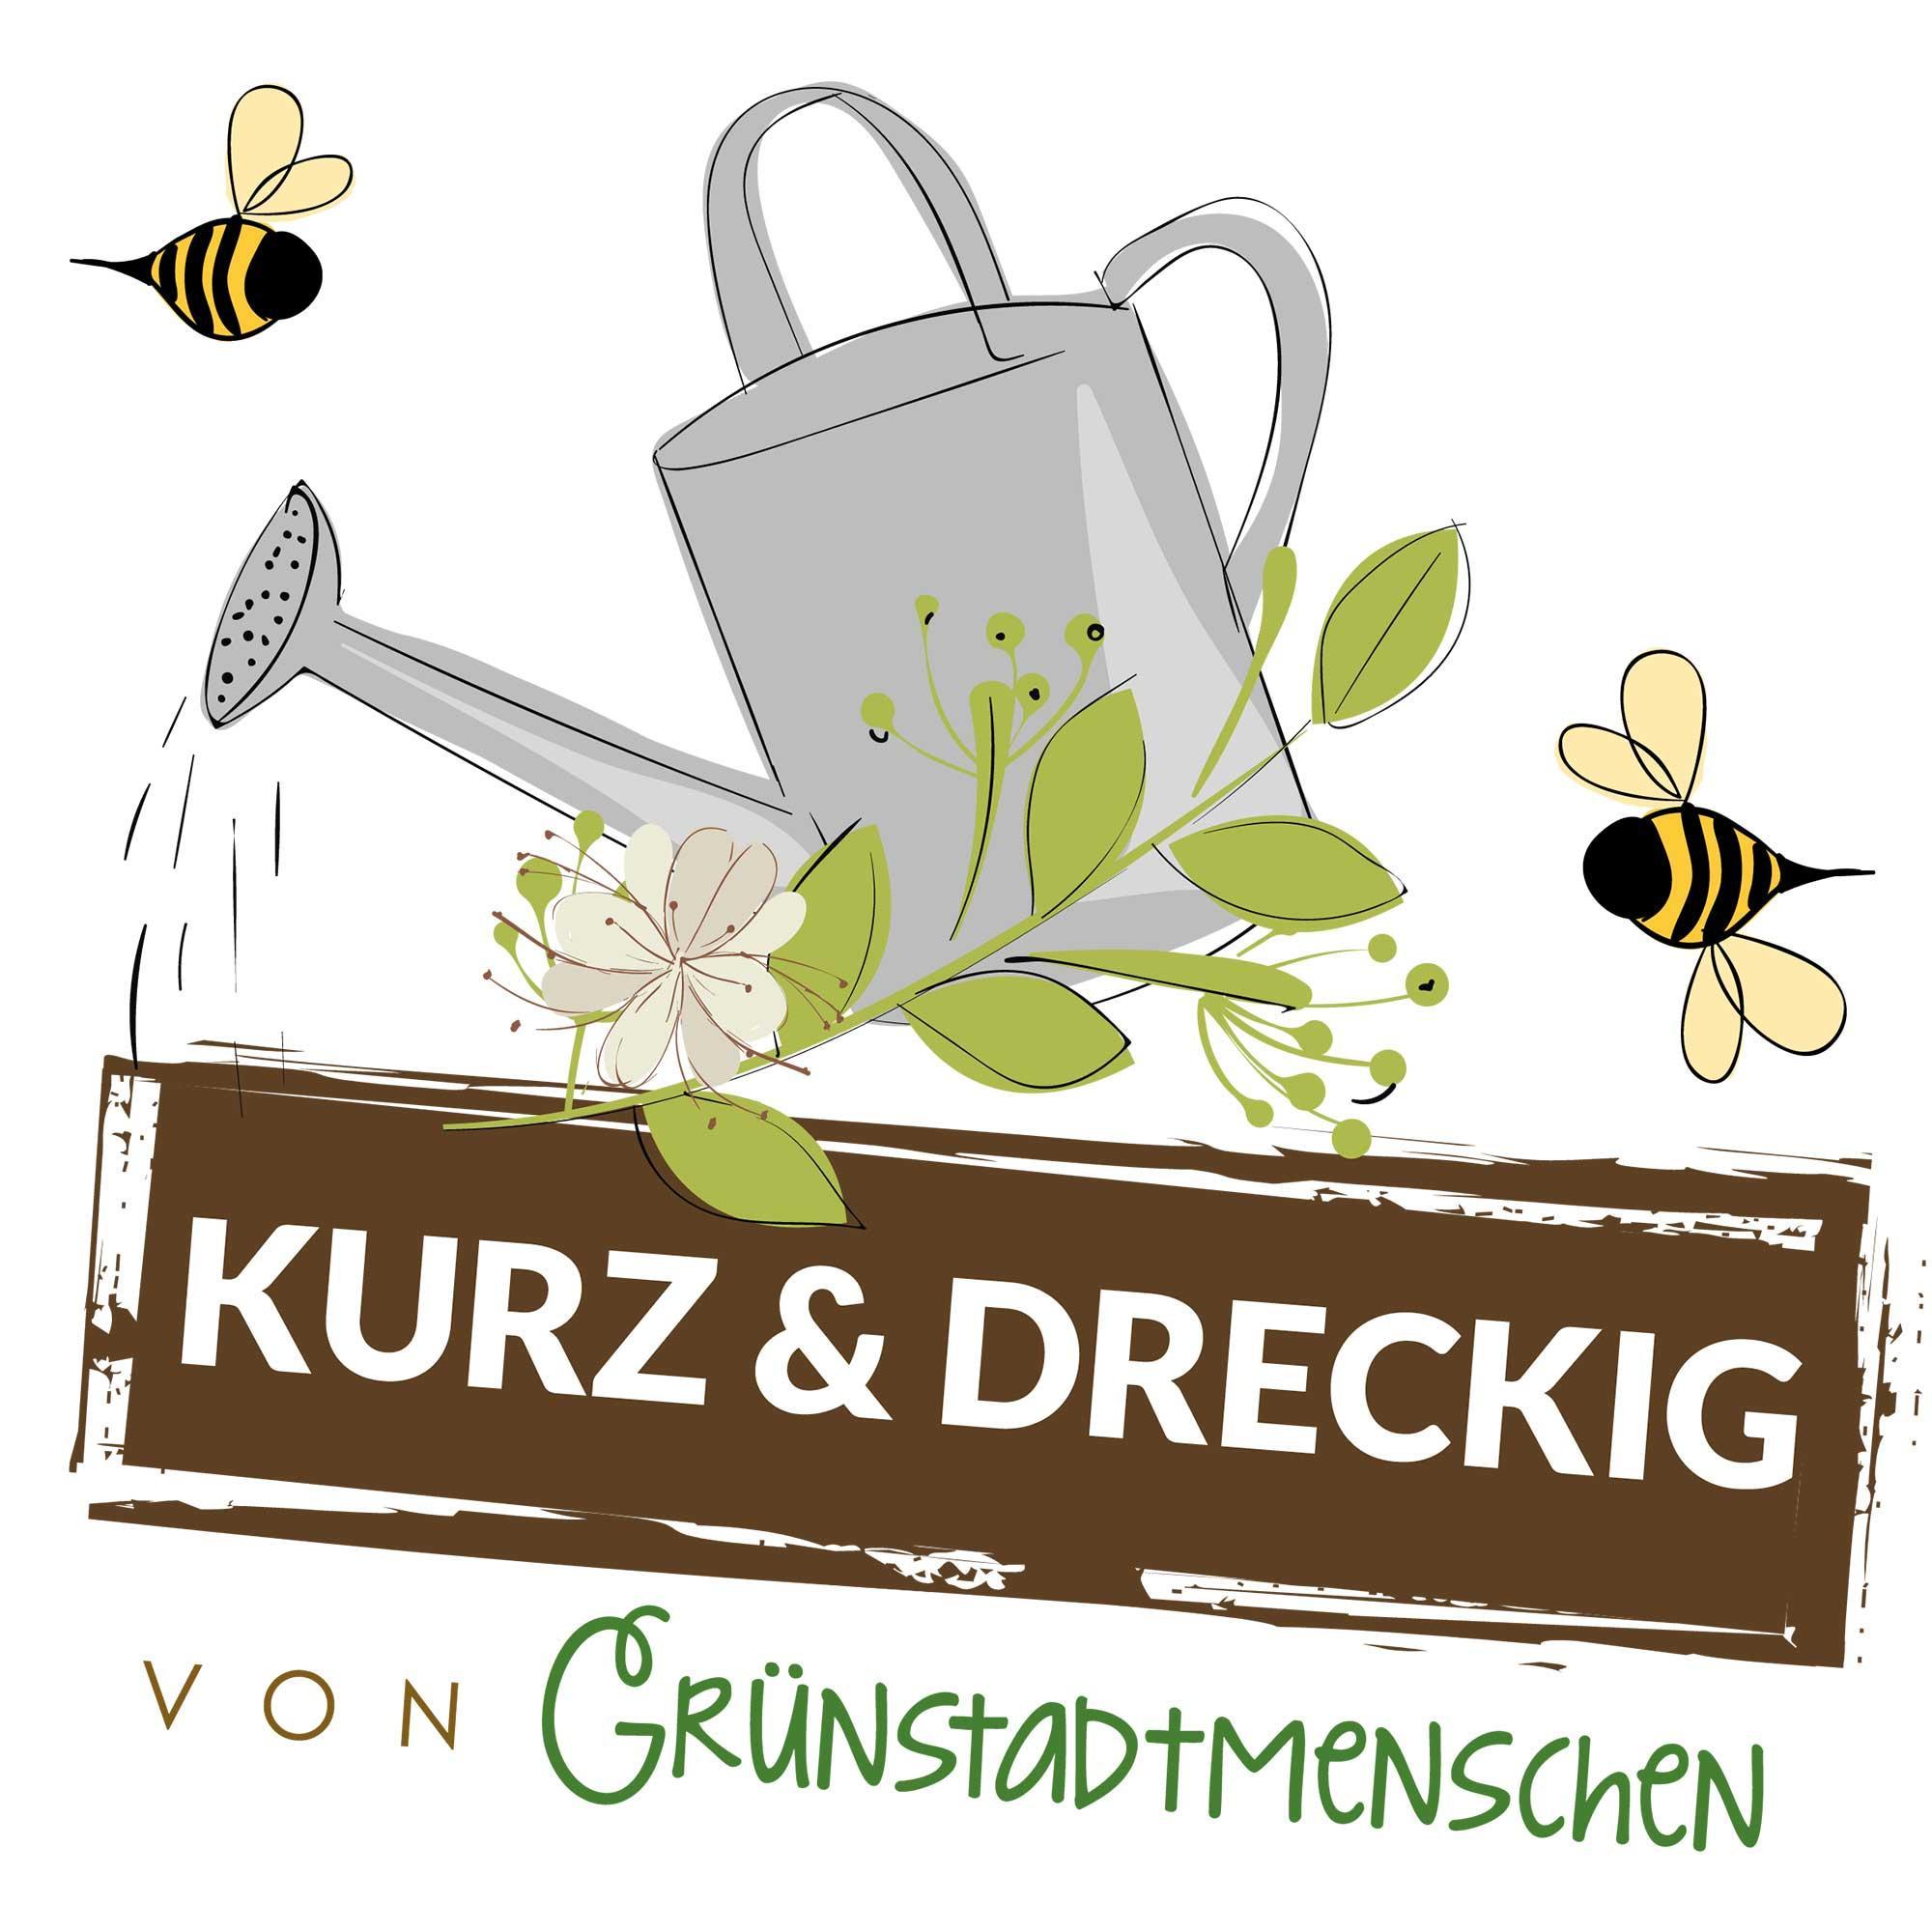 #52 Kurz & dreckig: Karinas Gartentipps für den März